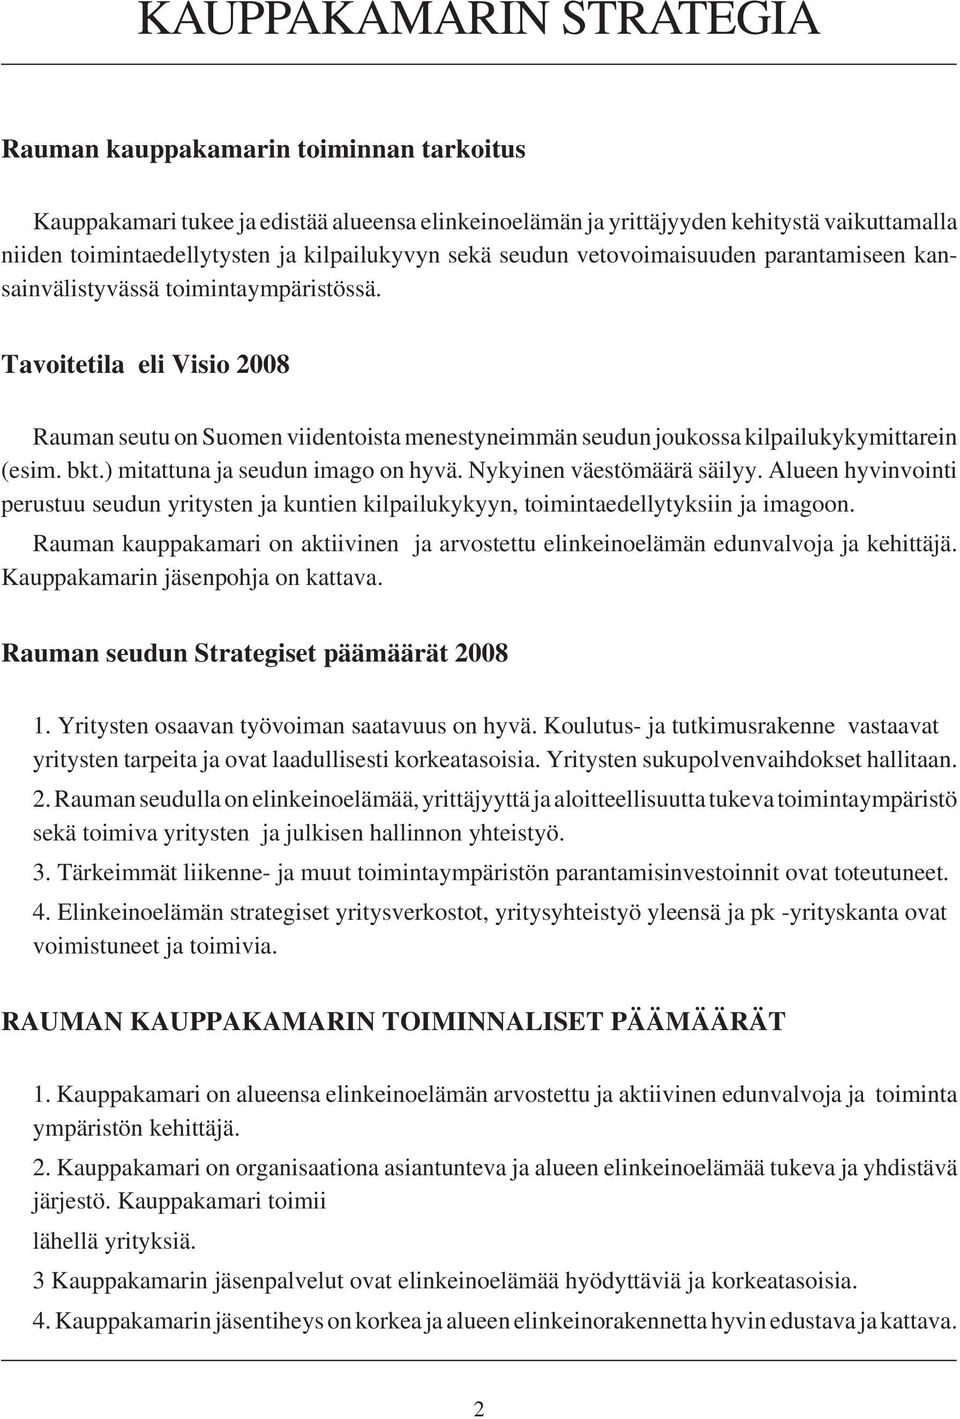 Tavoitetila eli Visio 2008 Rauman seutu on Suomen viidentoista menestyneimmän seudun joukossa kilpailukykymittarein (esim. bkt.) mitattuna ja seudun imago on hyvä. Nykyinen väestömäärä säilyy.